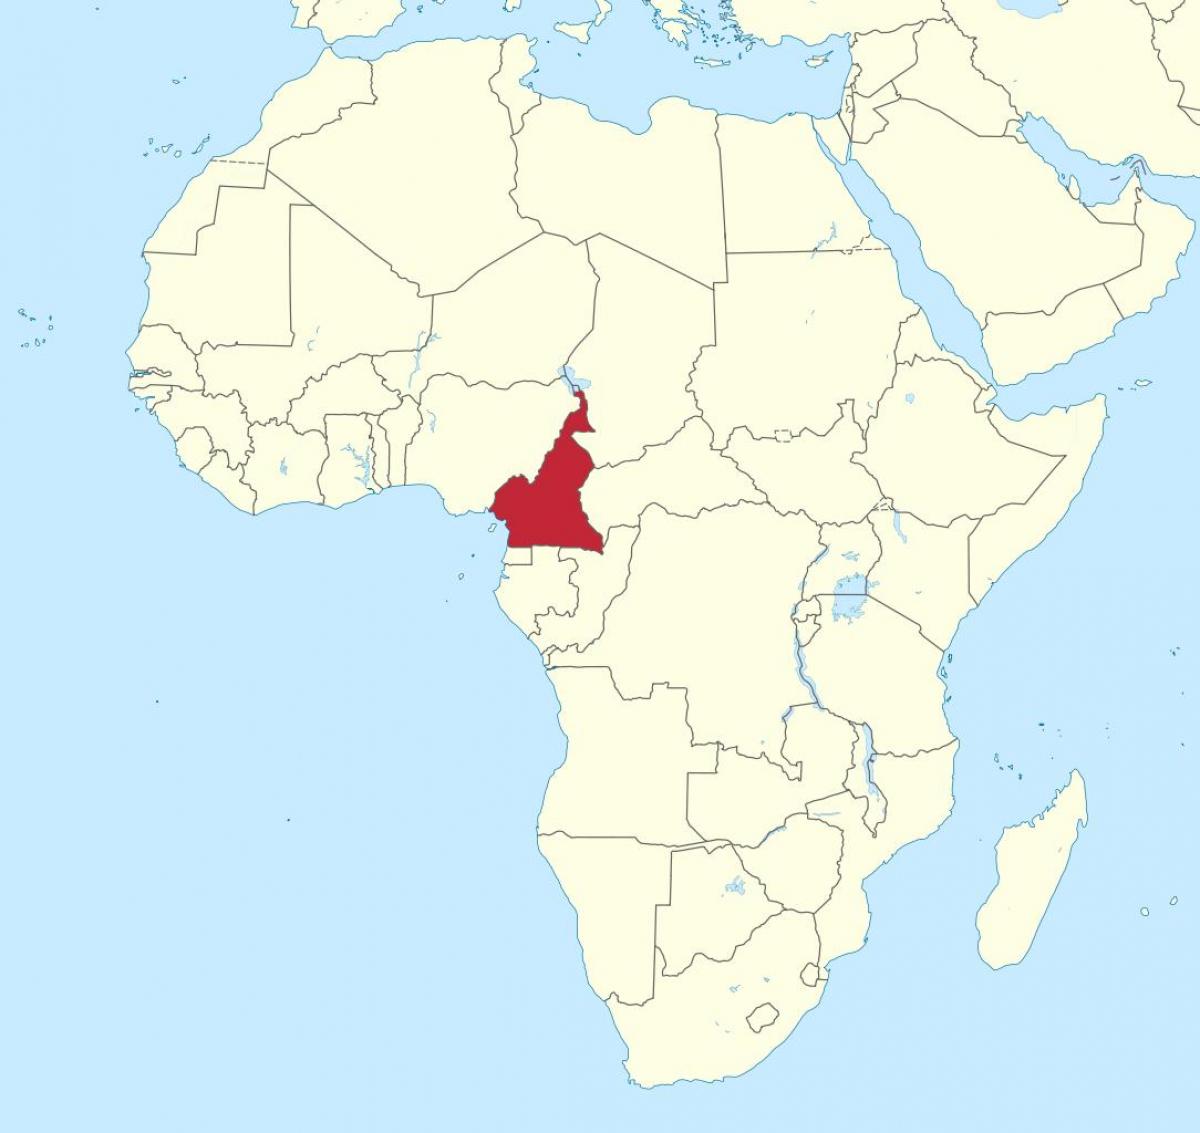 Peta dari Kamerun, afrika barat